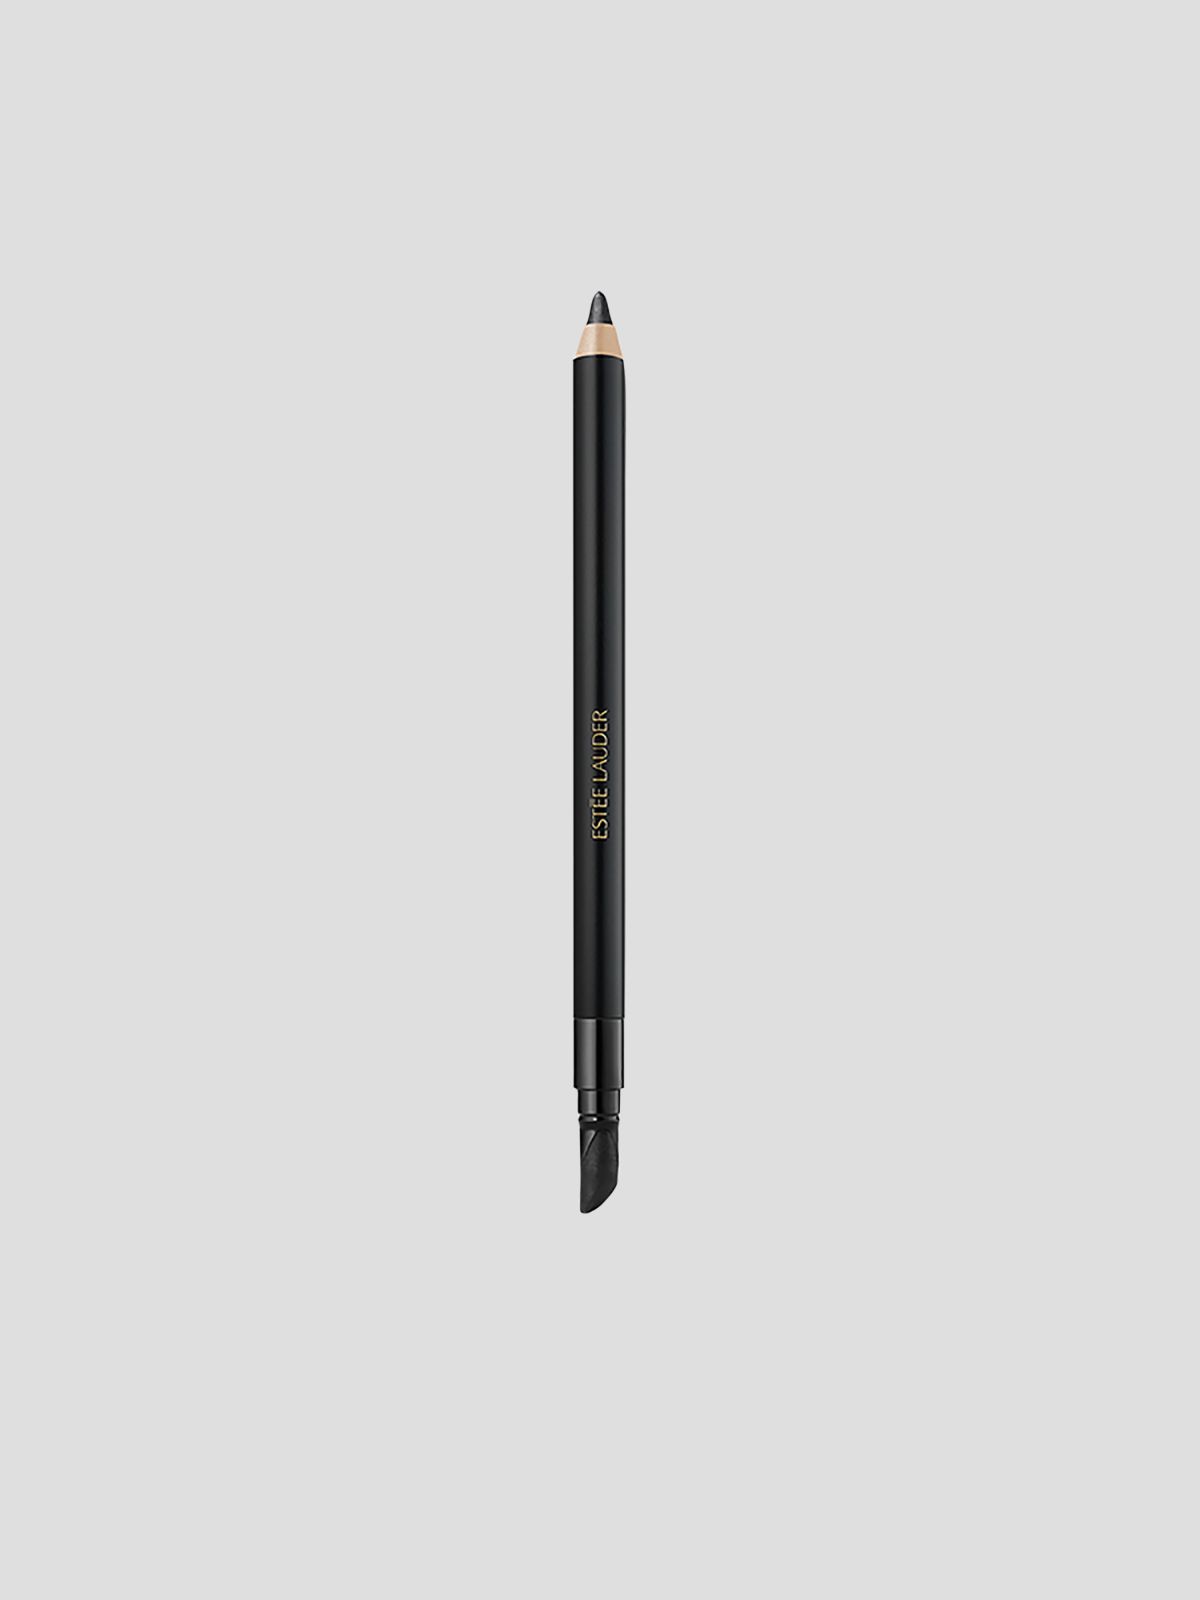  עפרון עיניים עמיד למים 24 שעות מסדרת Double Wear Double Wear 24H Waterproof Gel Eye Pencil של ESTEE LAUDER